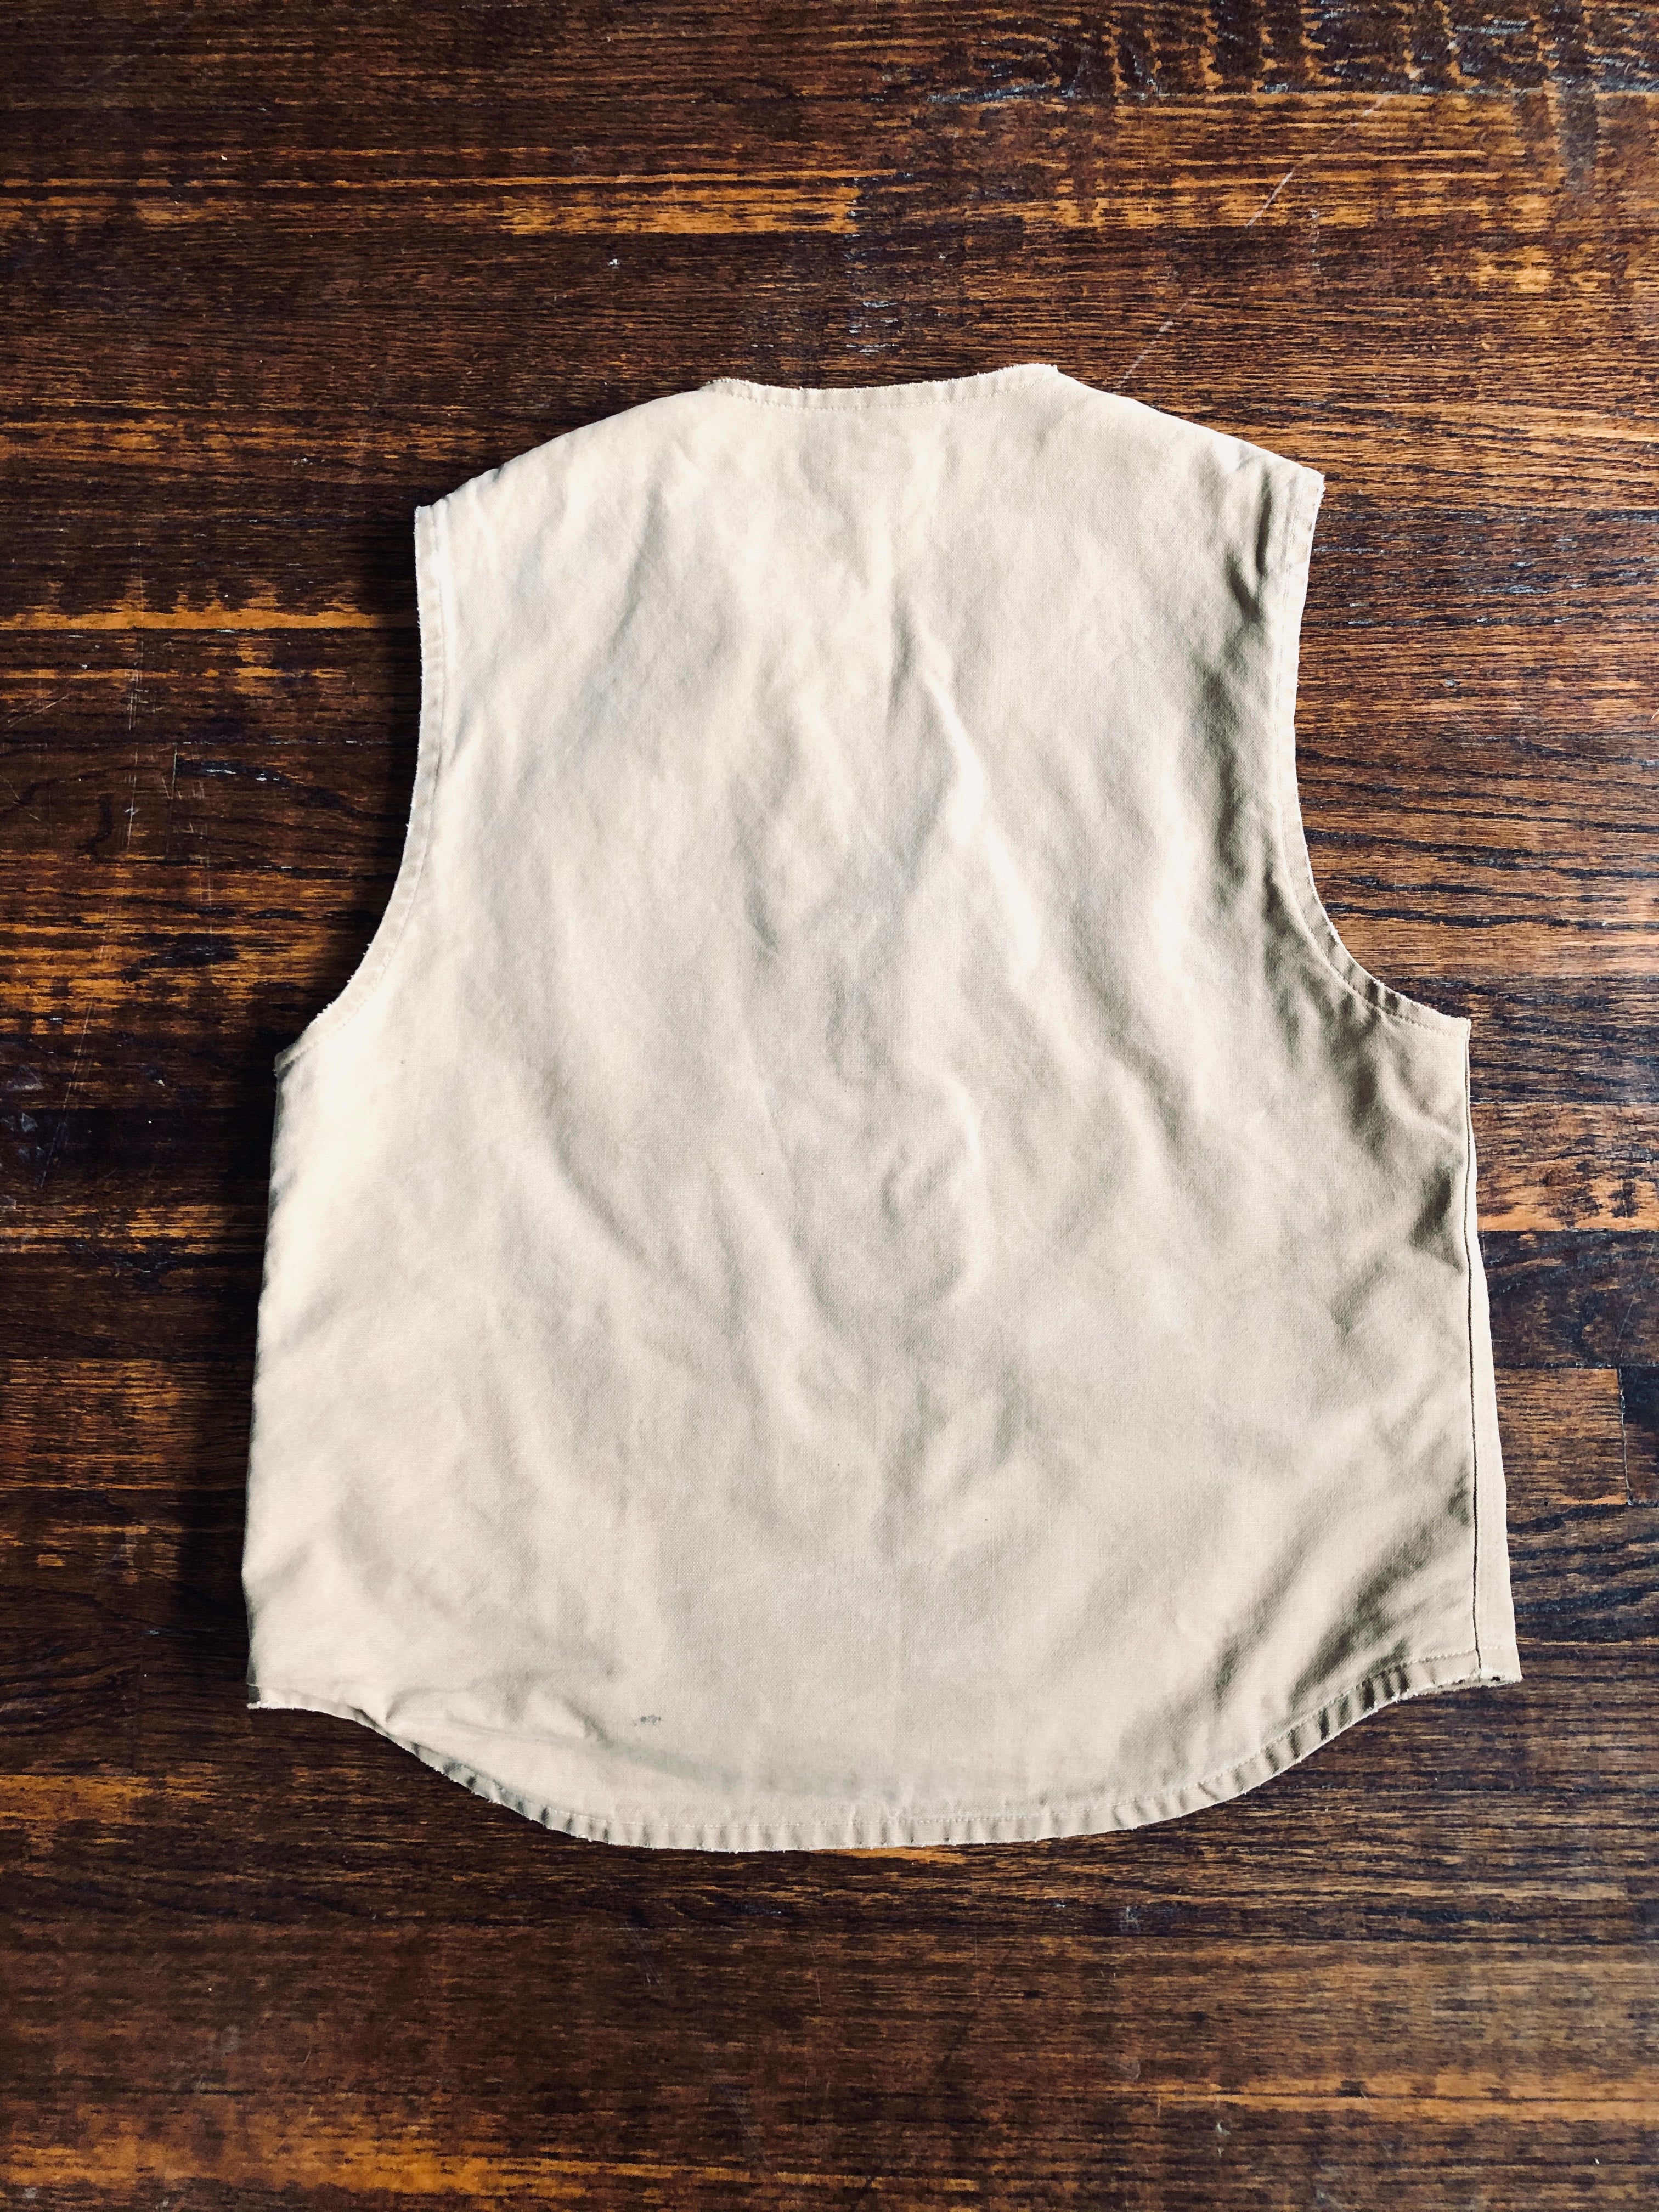 1990’s Double R.L. Canvas Vest